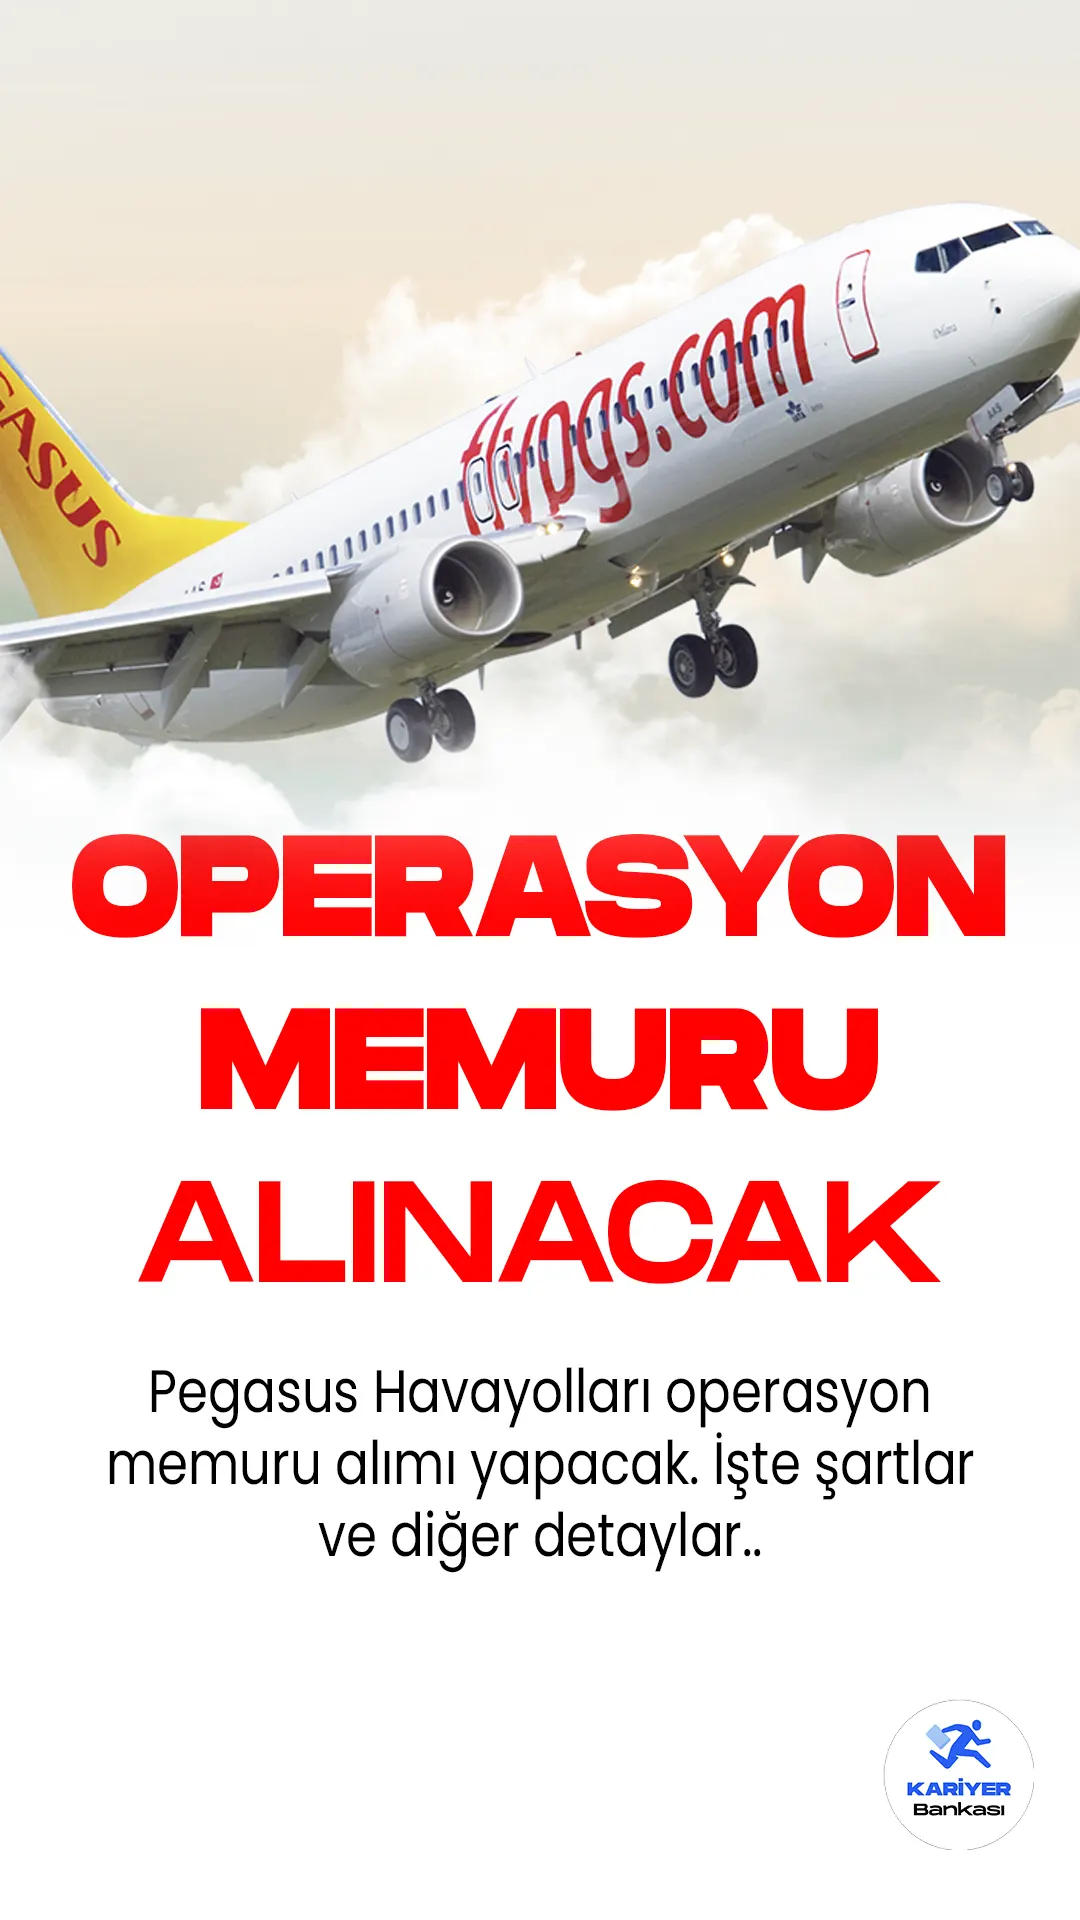 Pegasus Havayolları operasyon memuru alımı yapacak. En az önlisans mezunlarından operasyon memuru alımı için başvuru şartları ve diğer detaylar açıklandı.